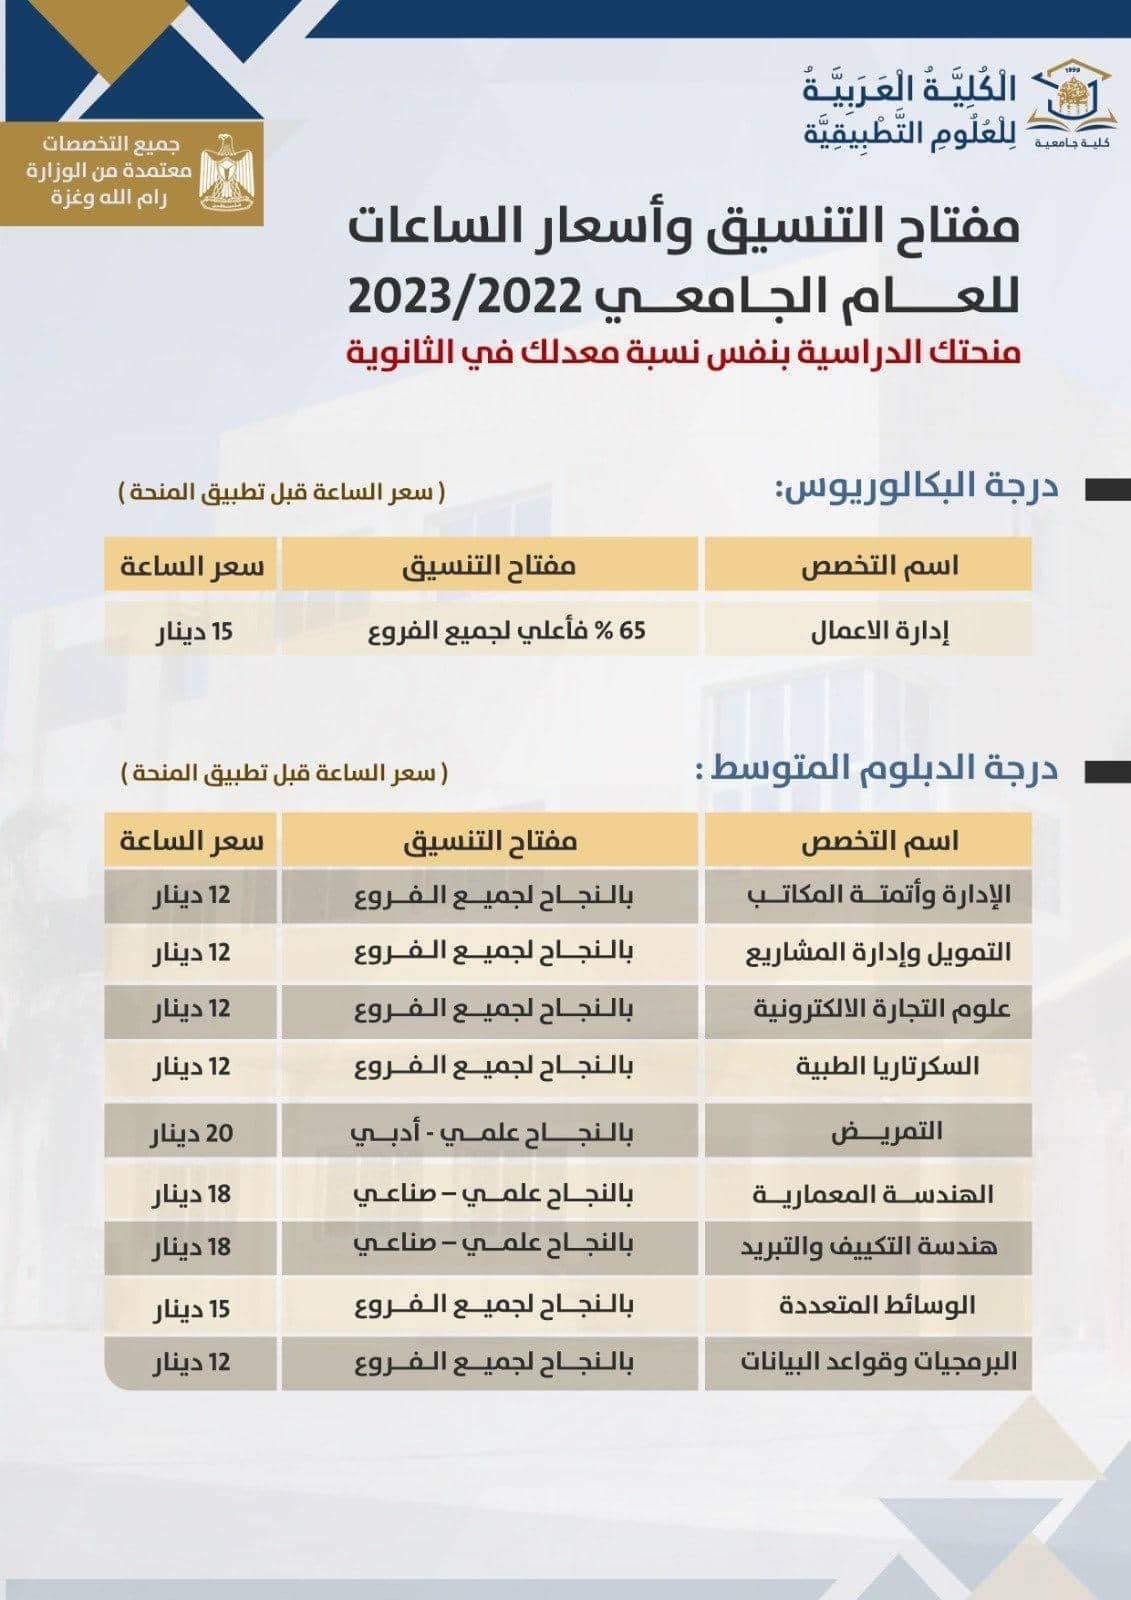 الكلية العربية للعلوم التطبيقية تُعلن مفتاح التنسيق في كافة التخصصات للعام 2022- 2023